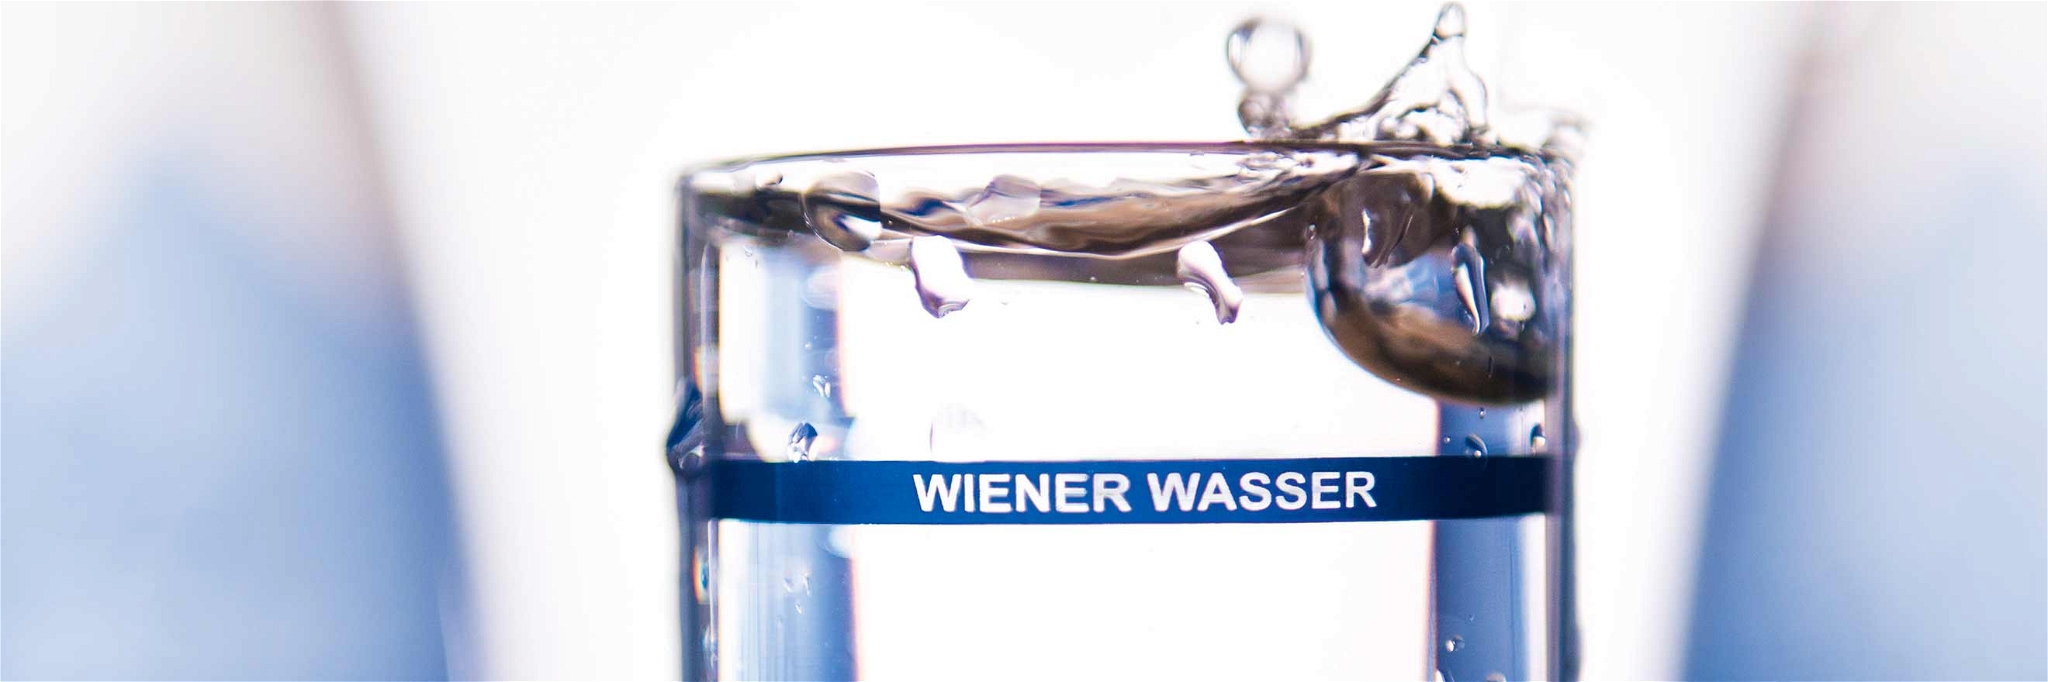 Das Wiener Wasser hat einen hohen Sauerstoffgehalt, viel Sulfat, Magnesium und Calcium sorgen für frischen Geschmack.